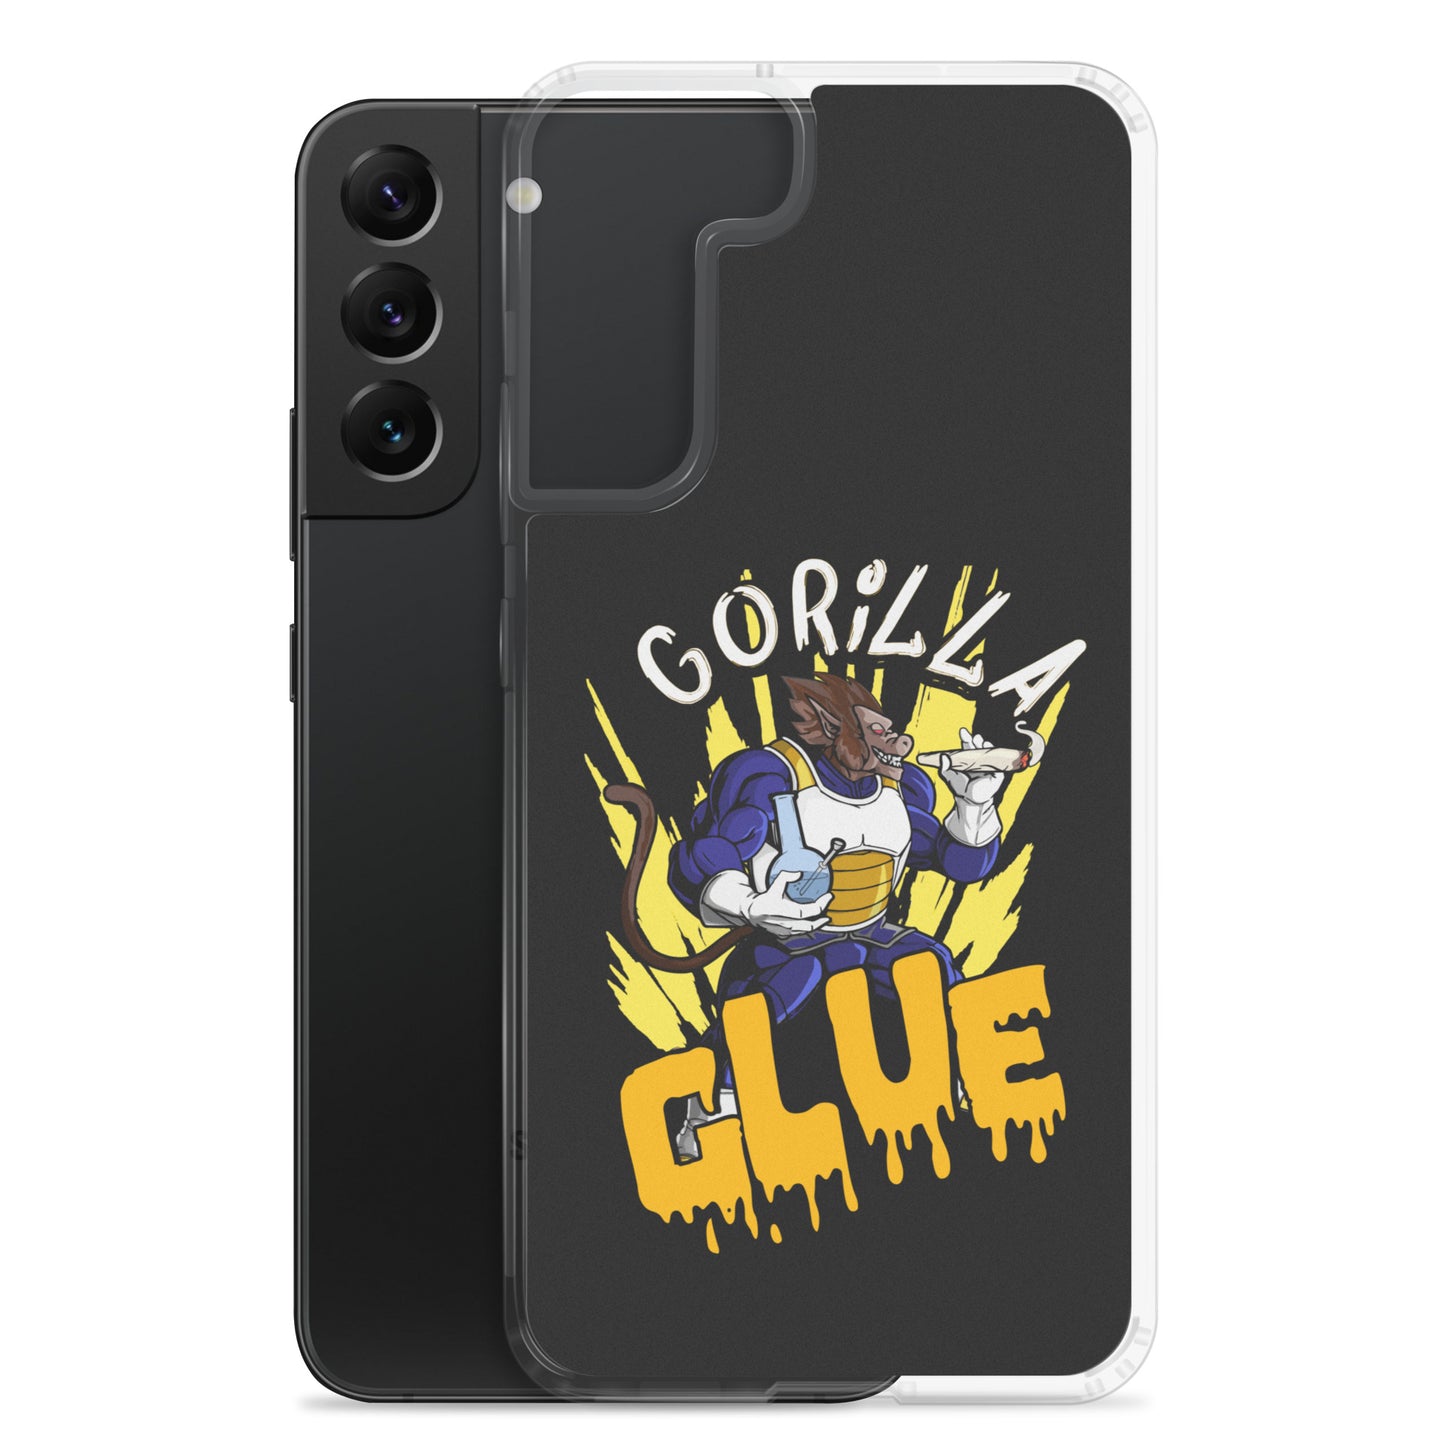 "Gorilla Glue DBZ" Samsung case